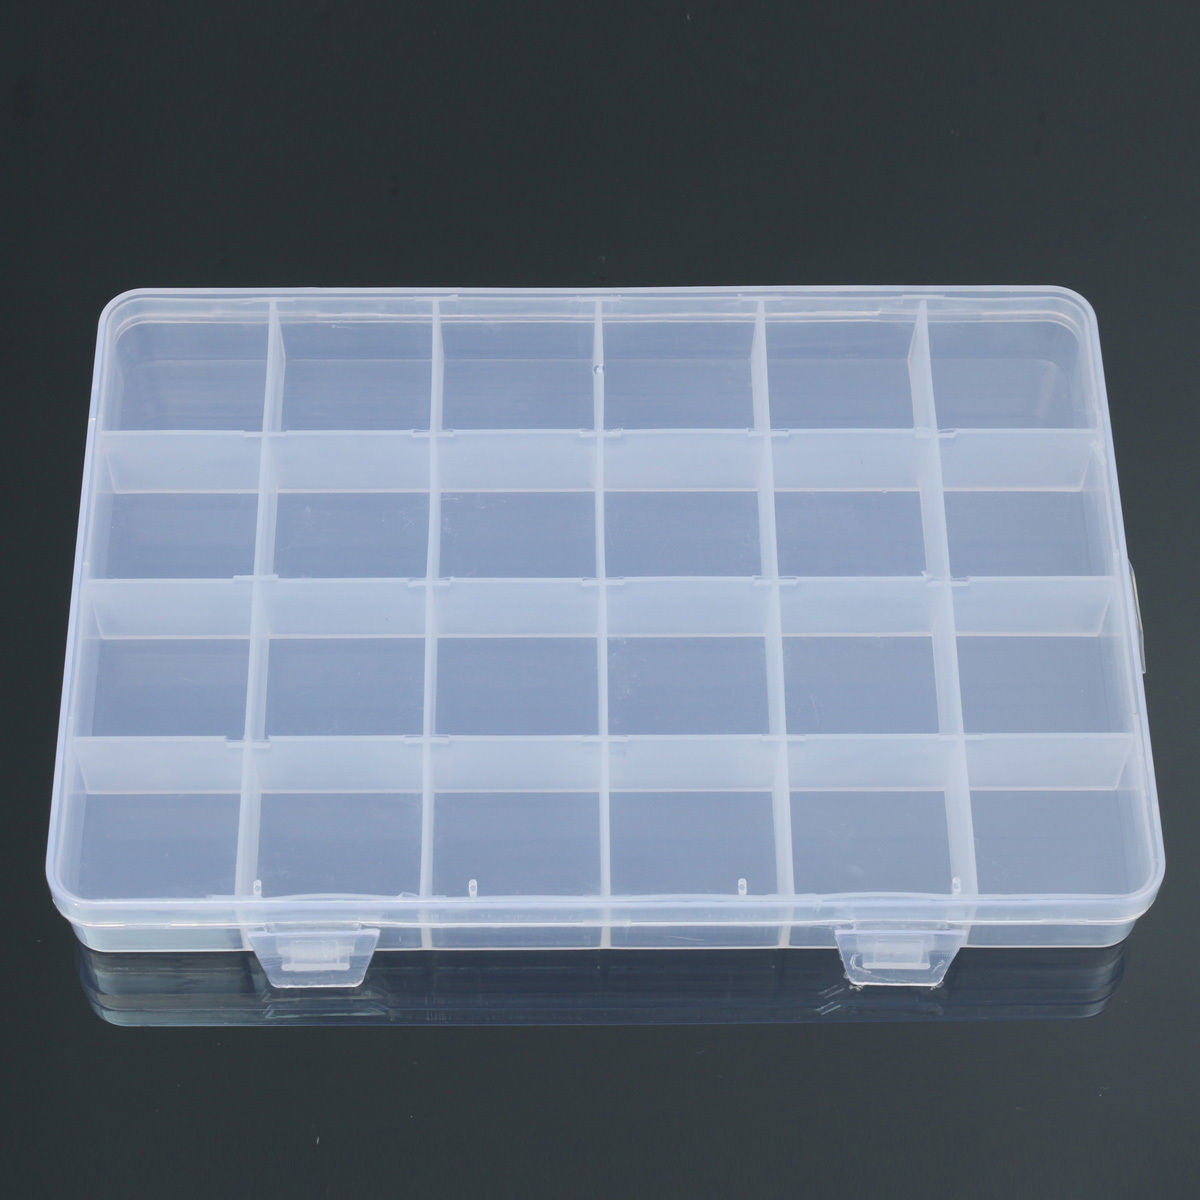 24 vakken Plastic Box Case Sieraden Bead Opslag Container Craft Organizer